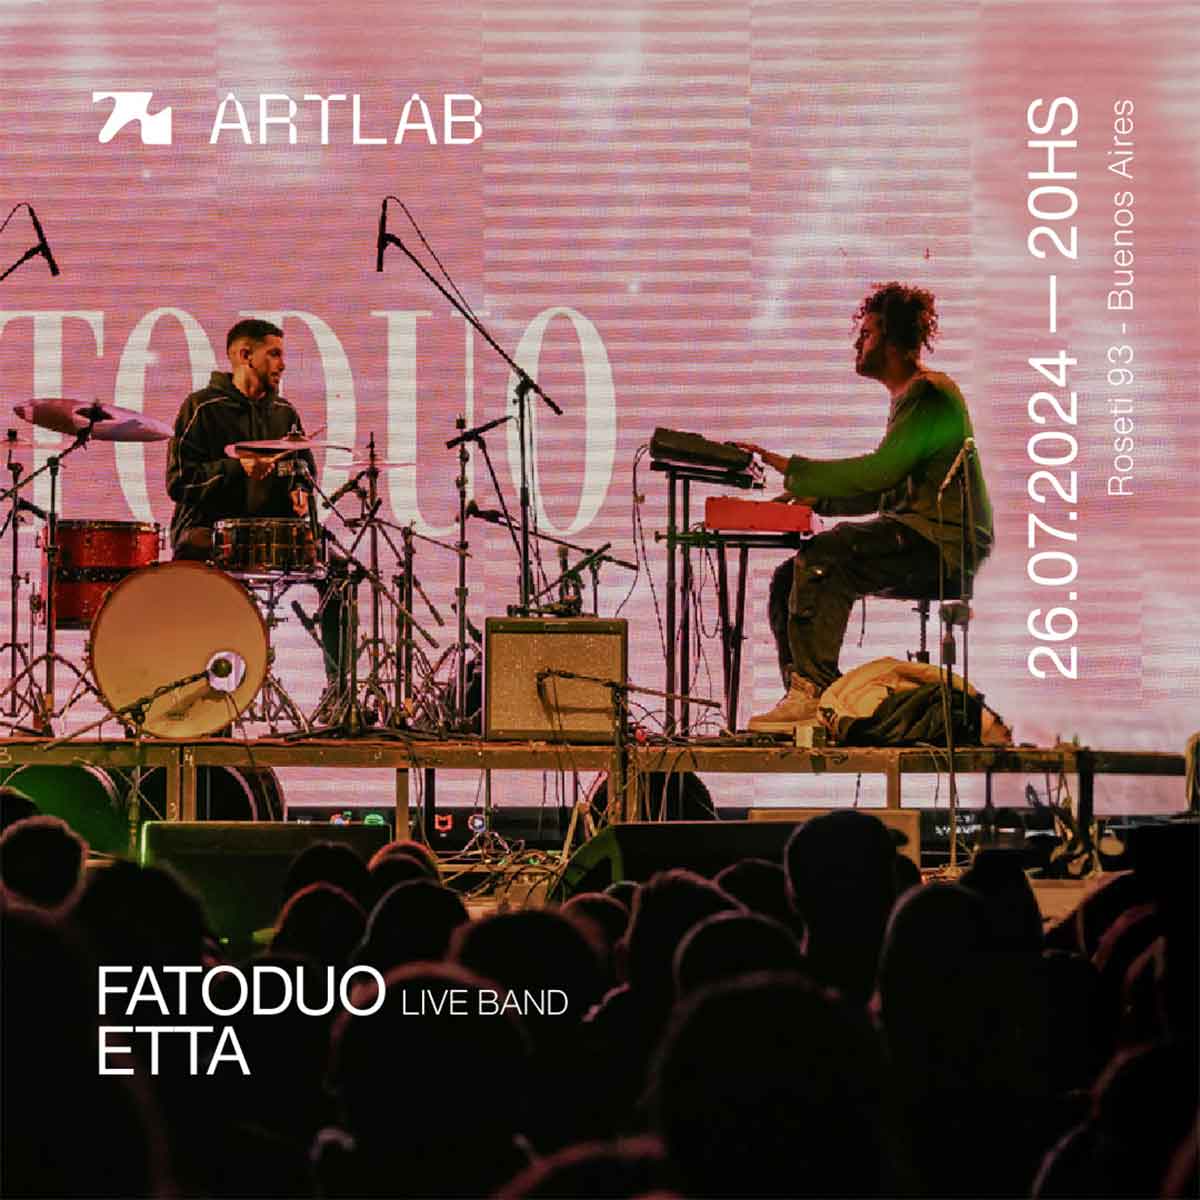 Fatoduo y Etta en Artlab